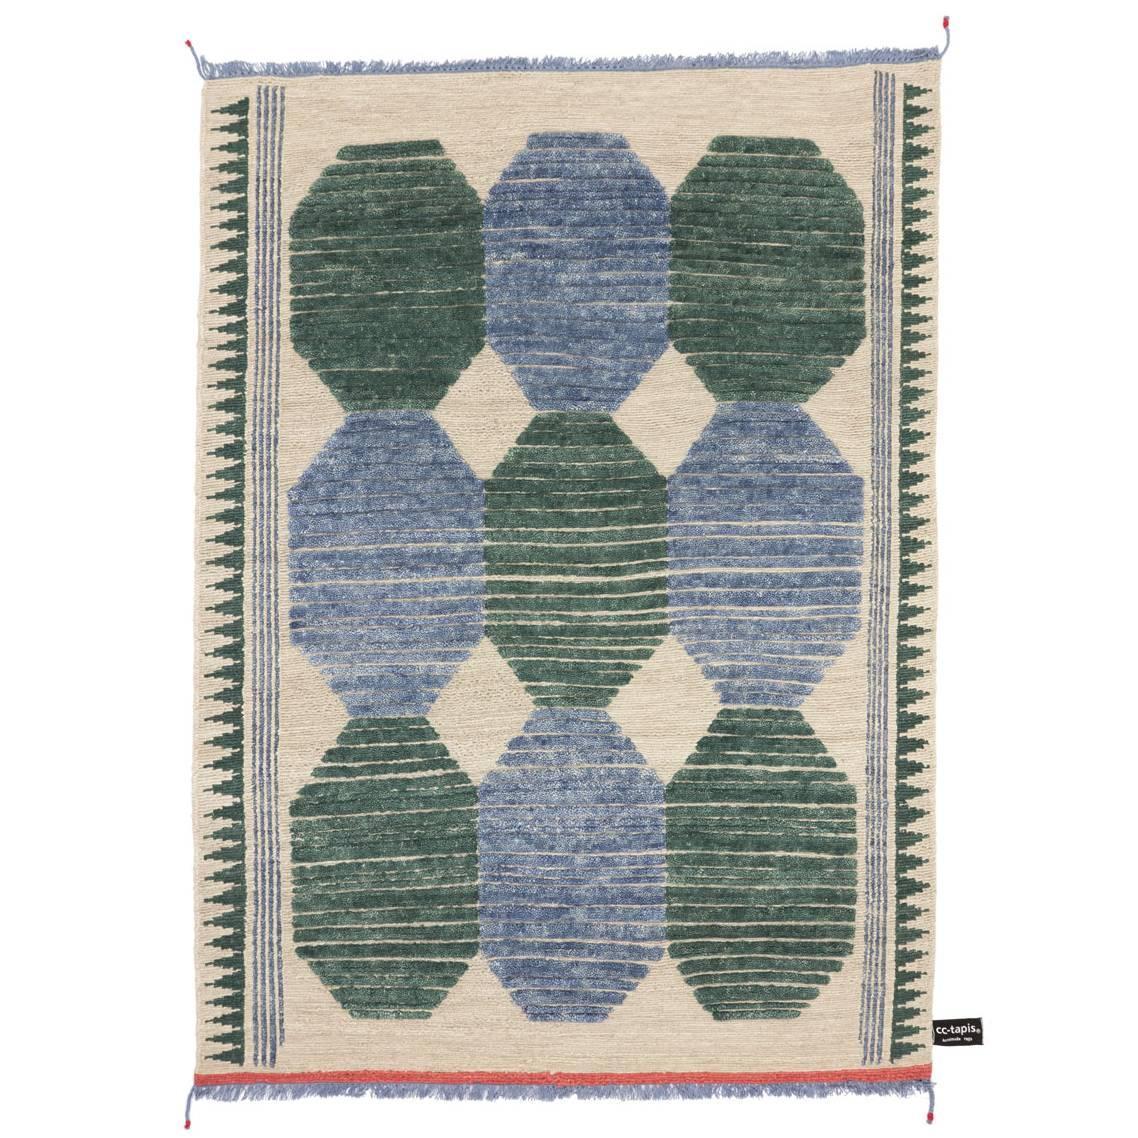 Tapis Primitive Weave C Bleu/vert n°1182 conçu par Chiara Andreatti pour cc-tapis